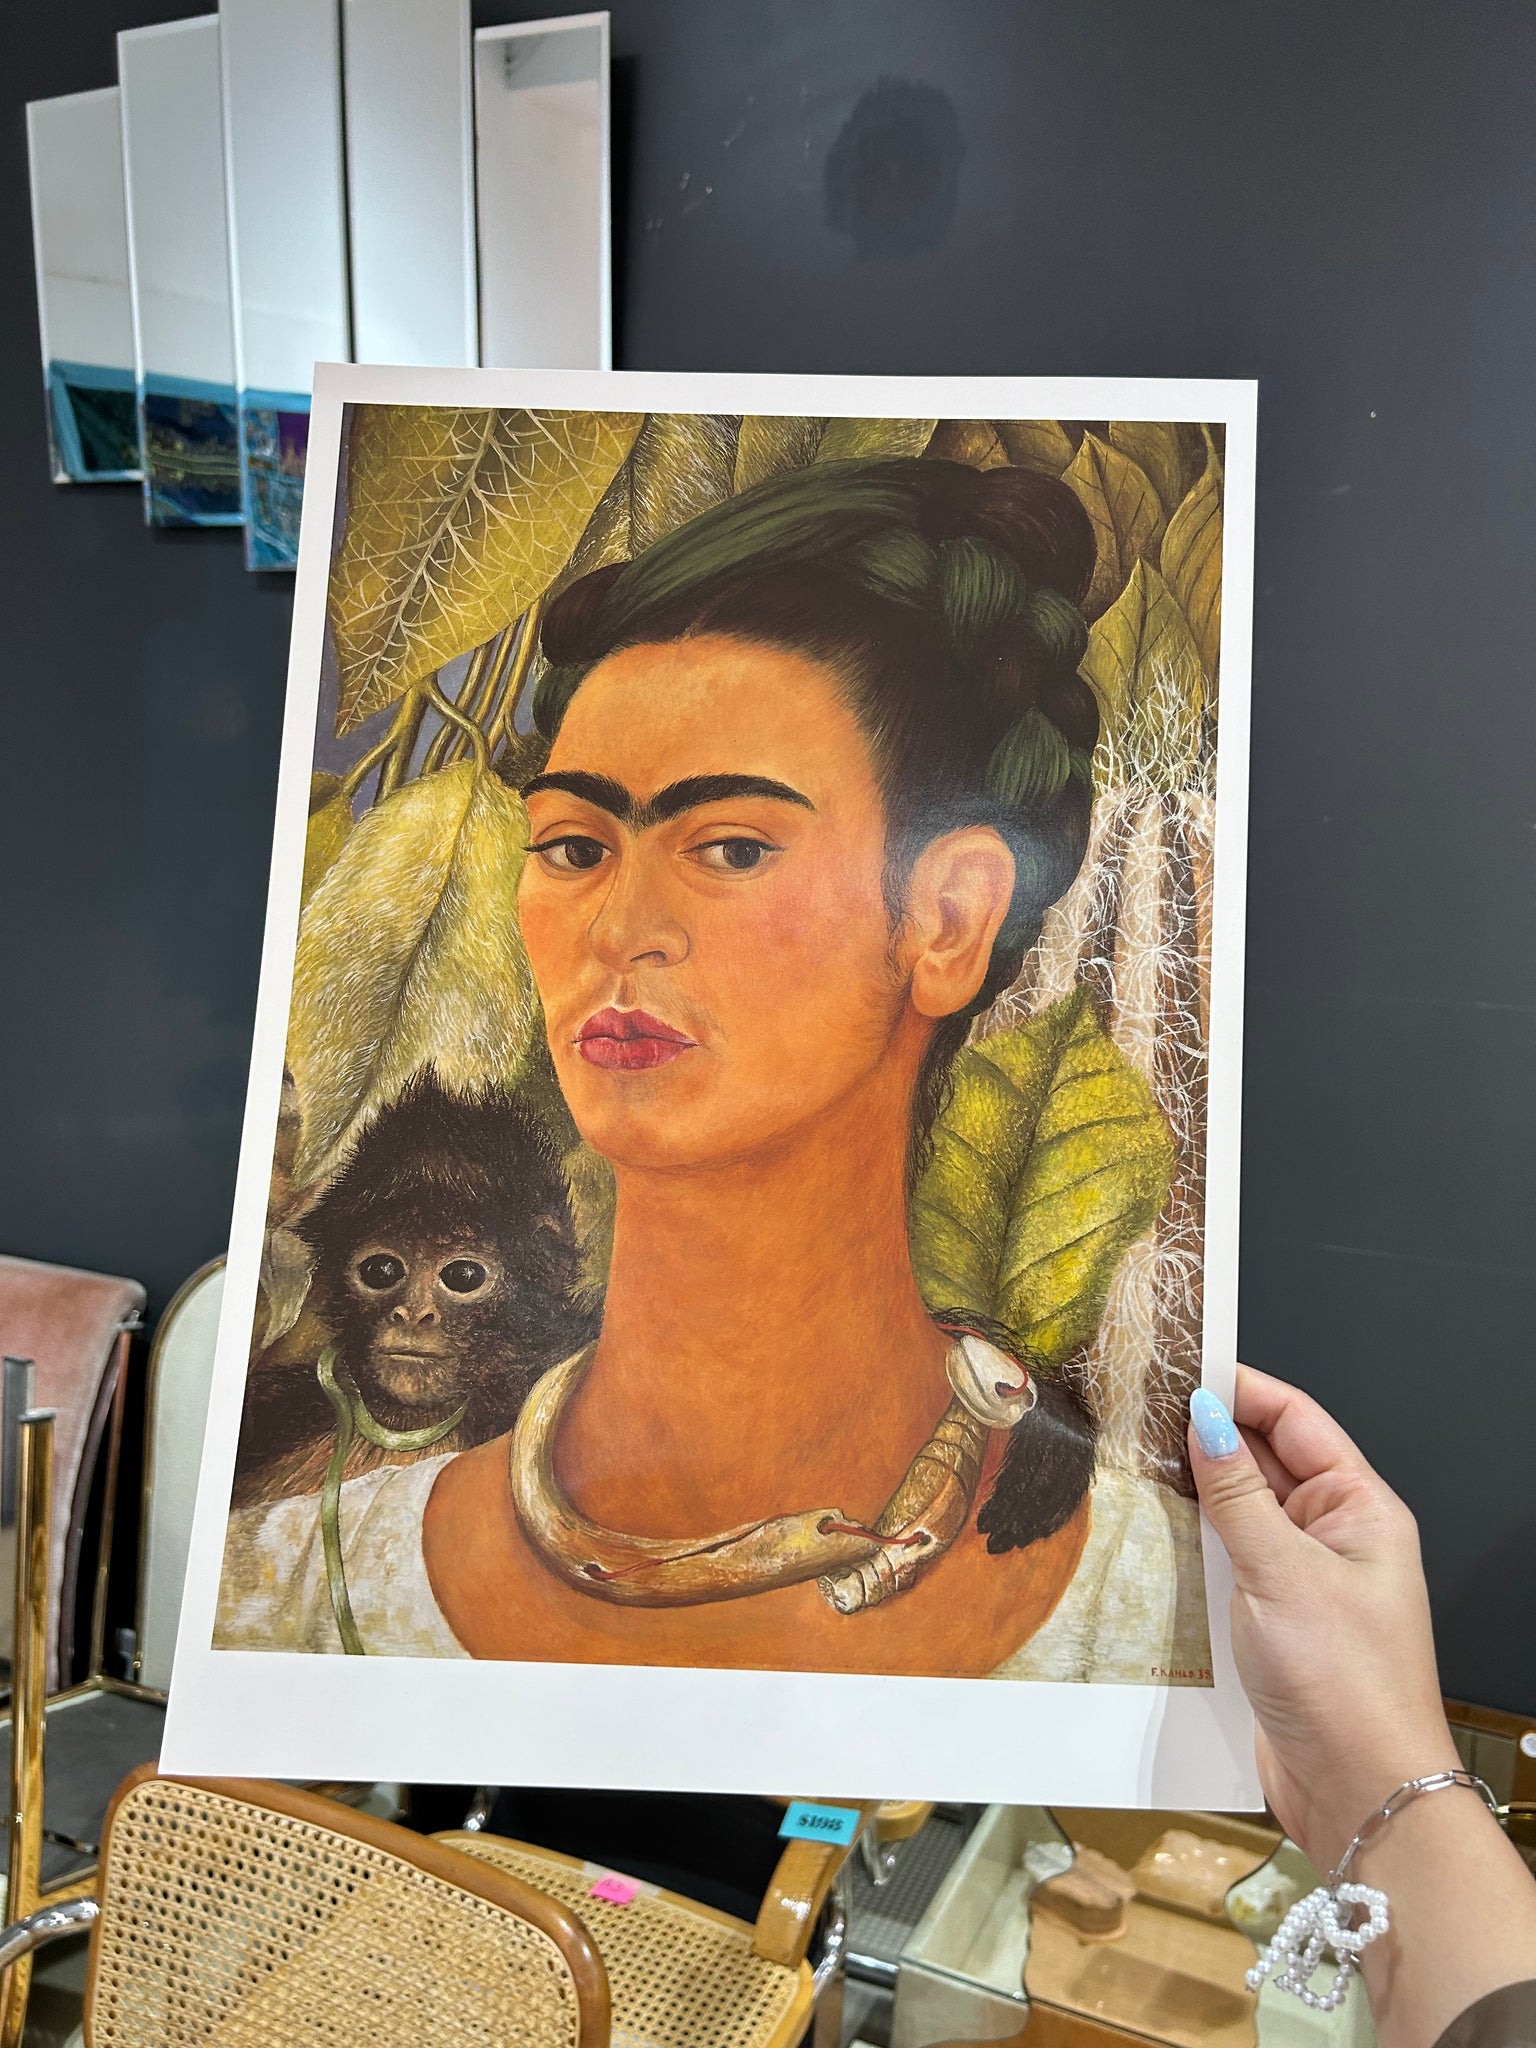 Affiches Frida Kahlo de Taschen